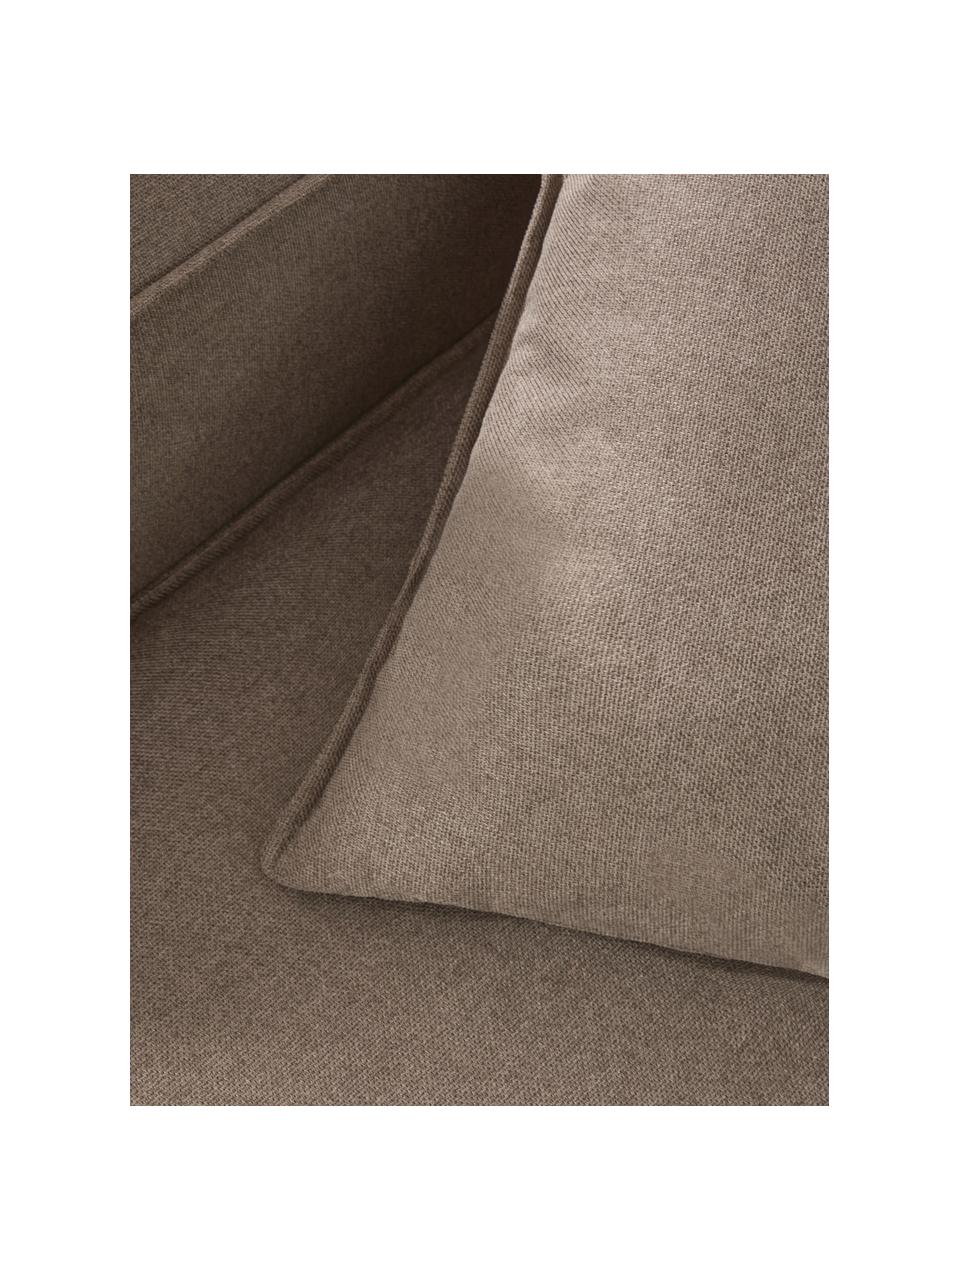 Sofa-Kissen Lennon in Braun, Bezug: 100% Polyester, Braun, B 60 x L 60 cm